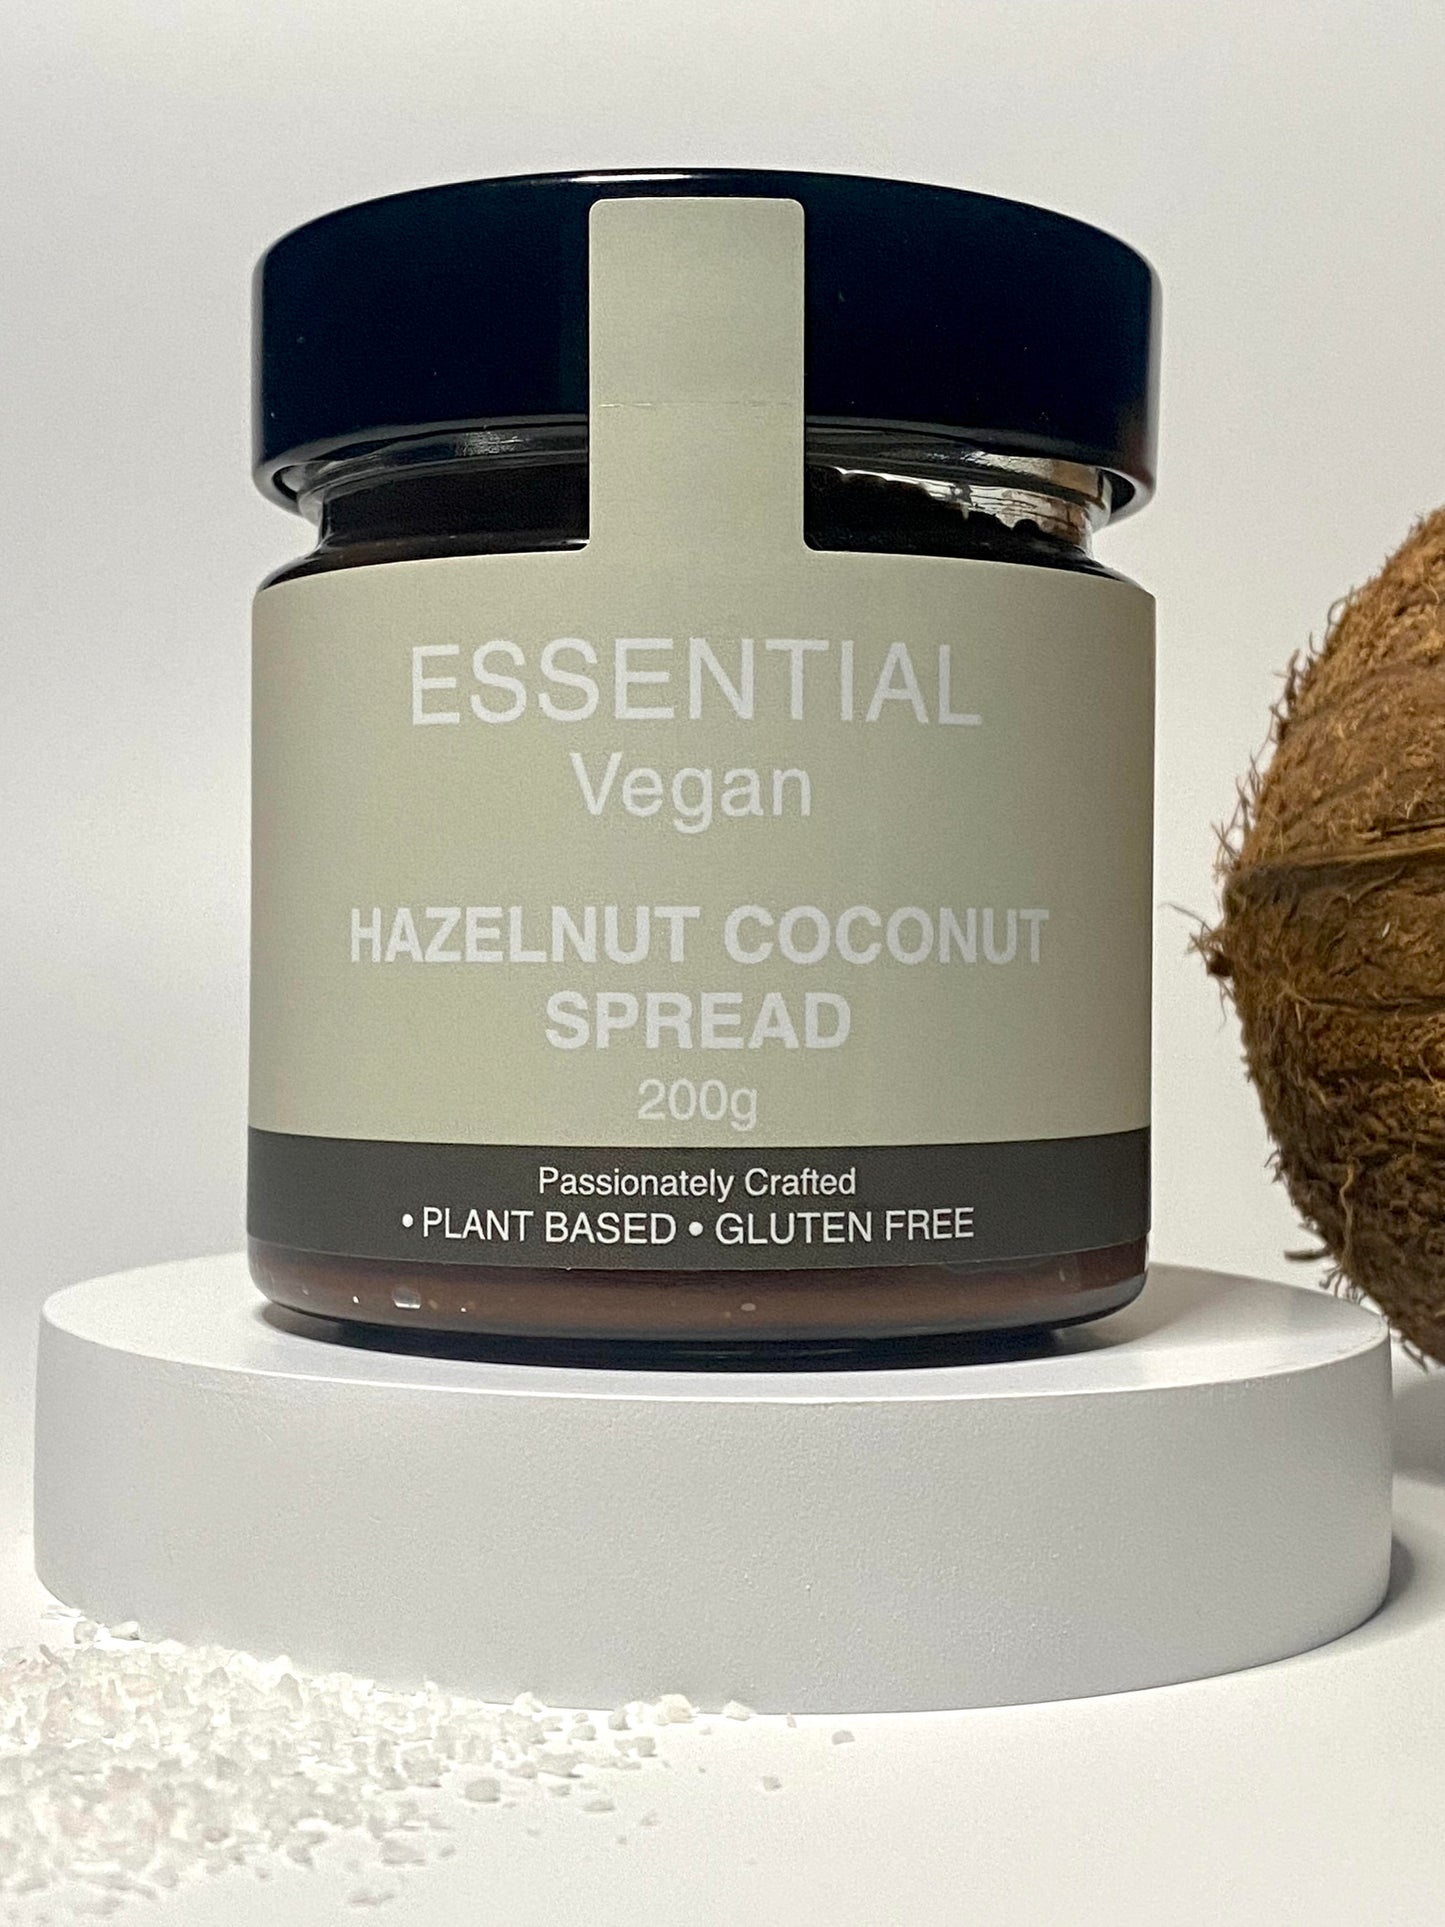 Hazelnut Coconut Spread